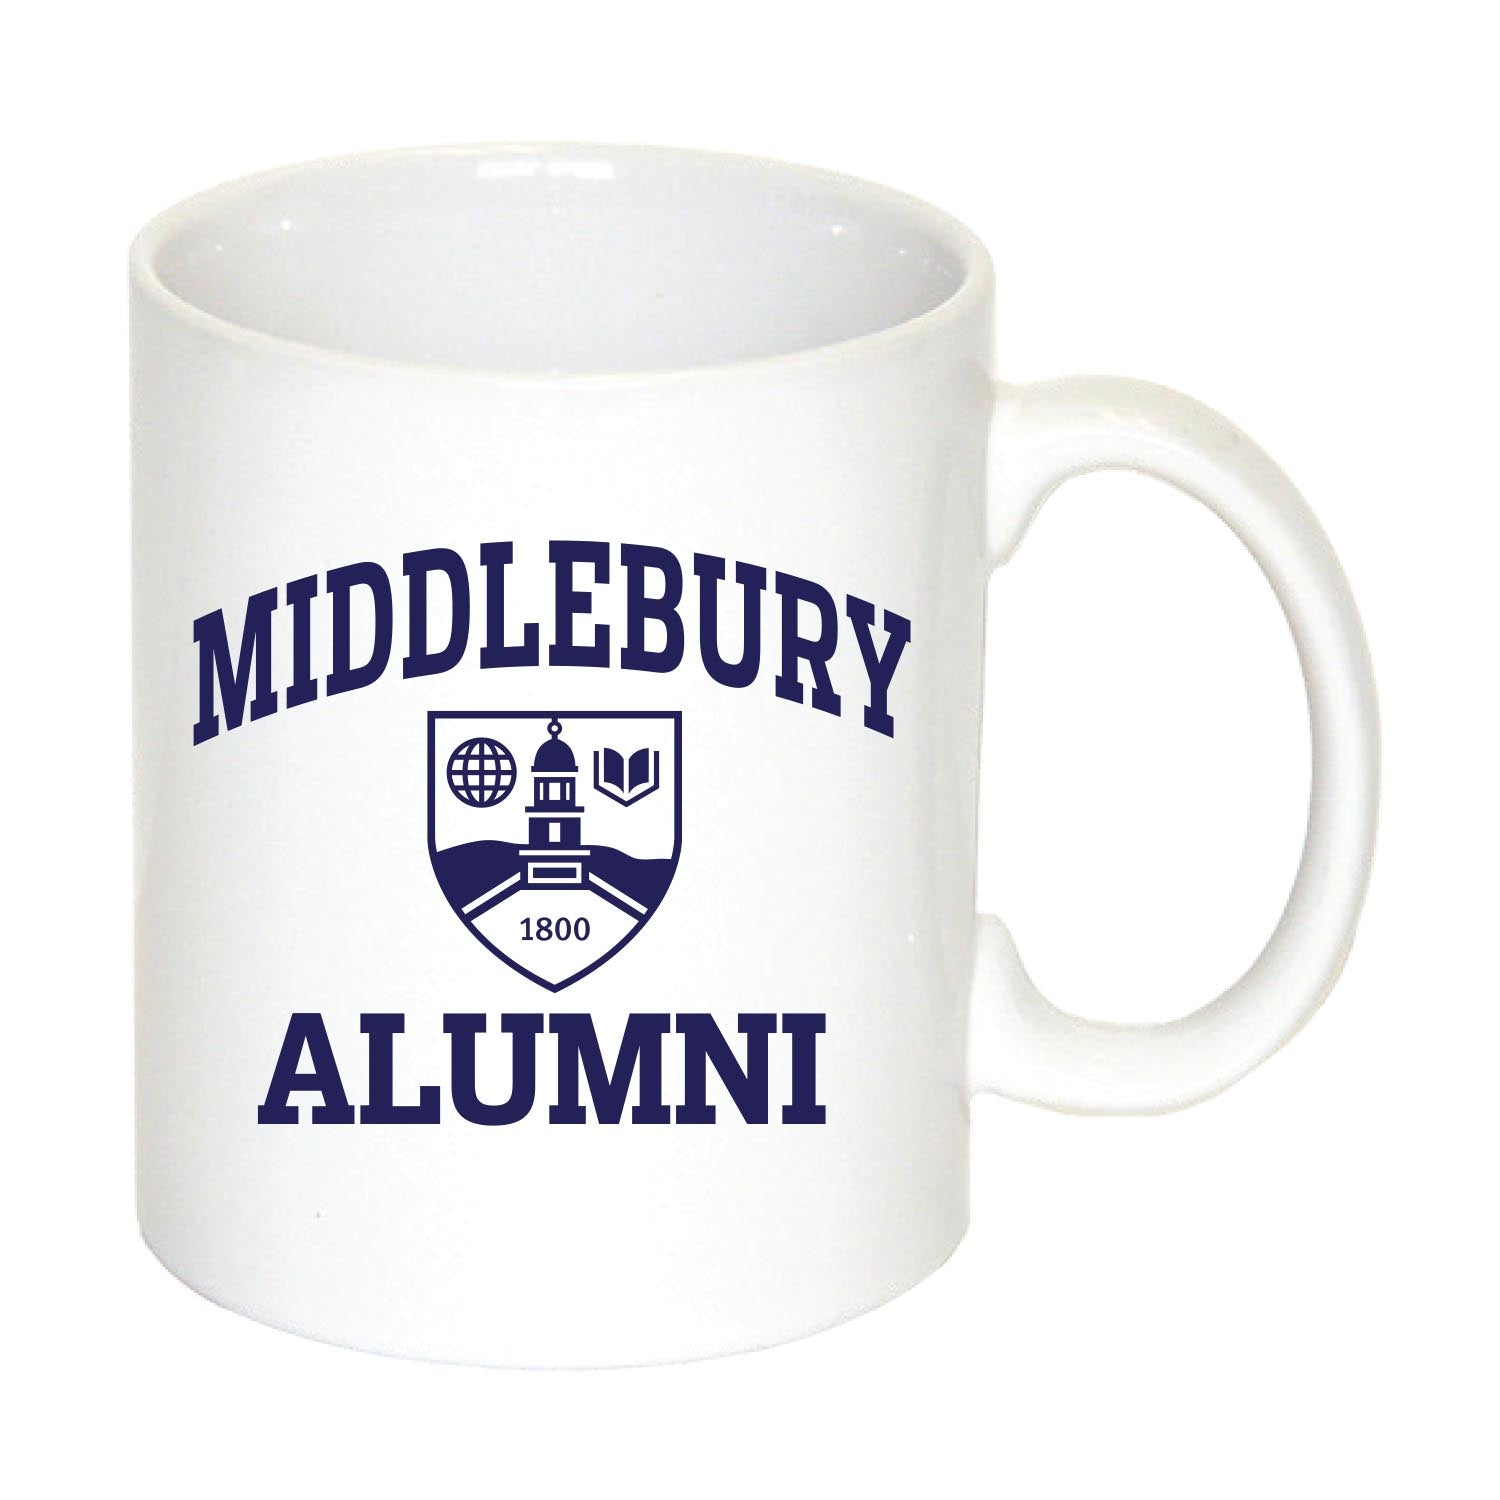 Middlebury ALUMNI Mug